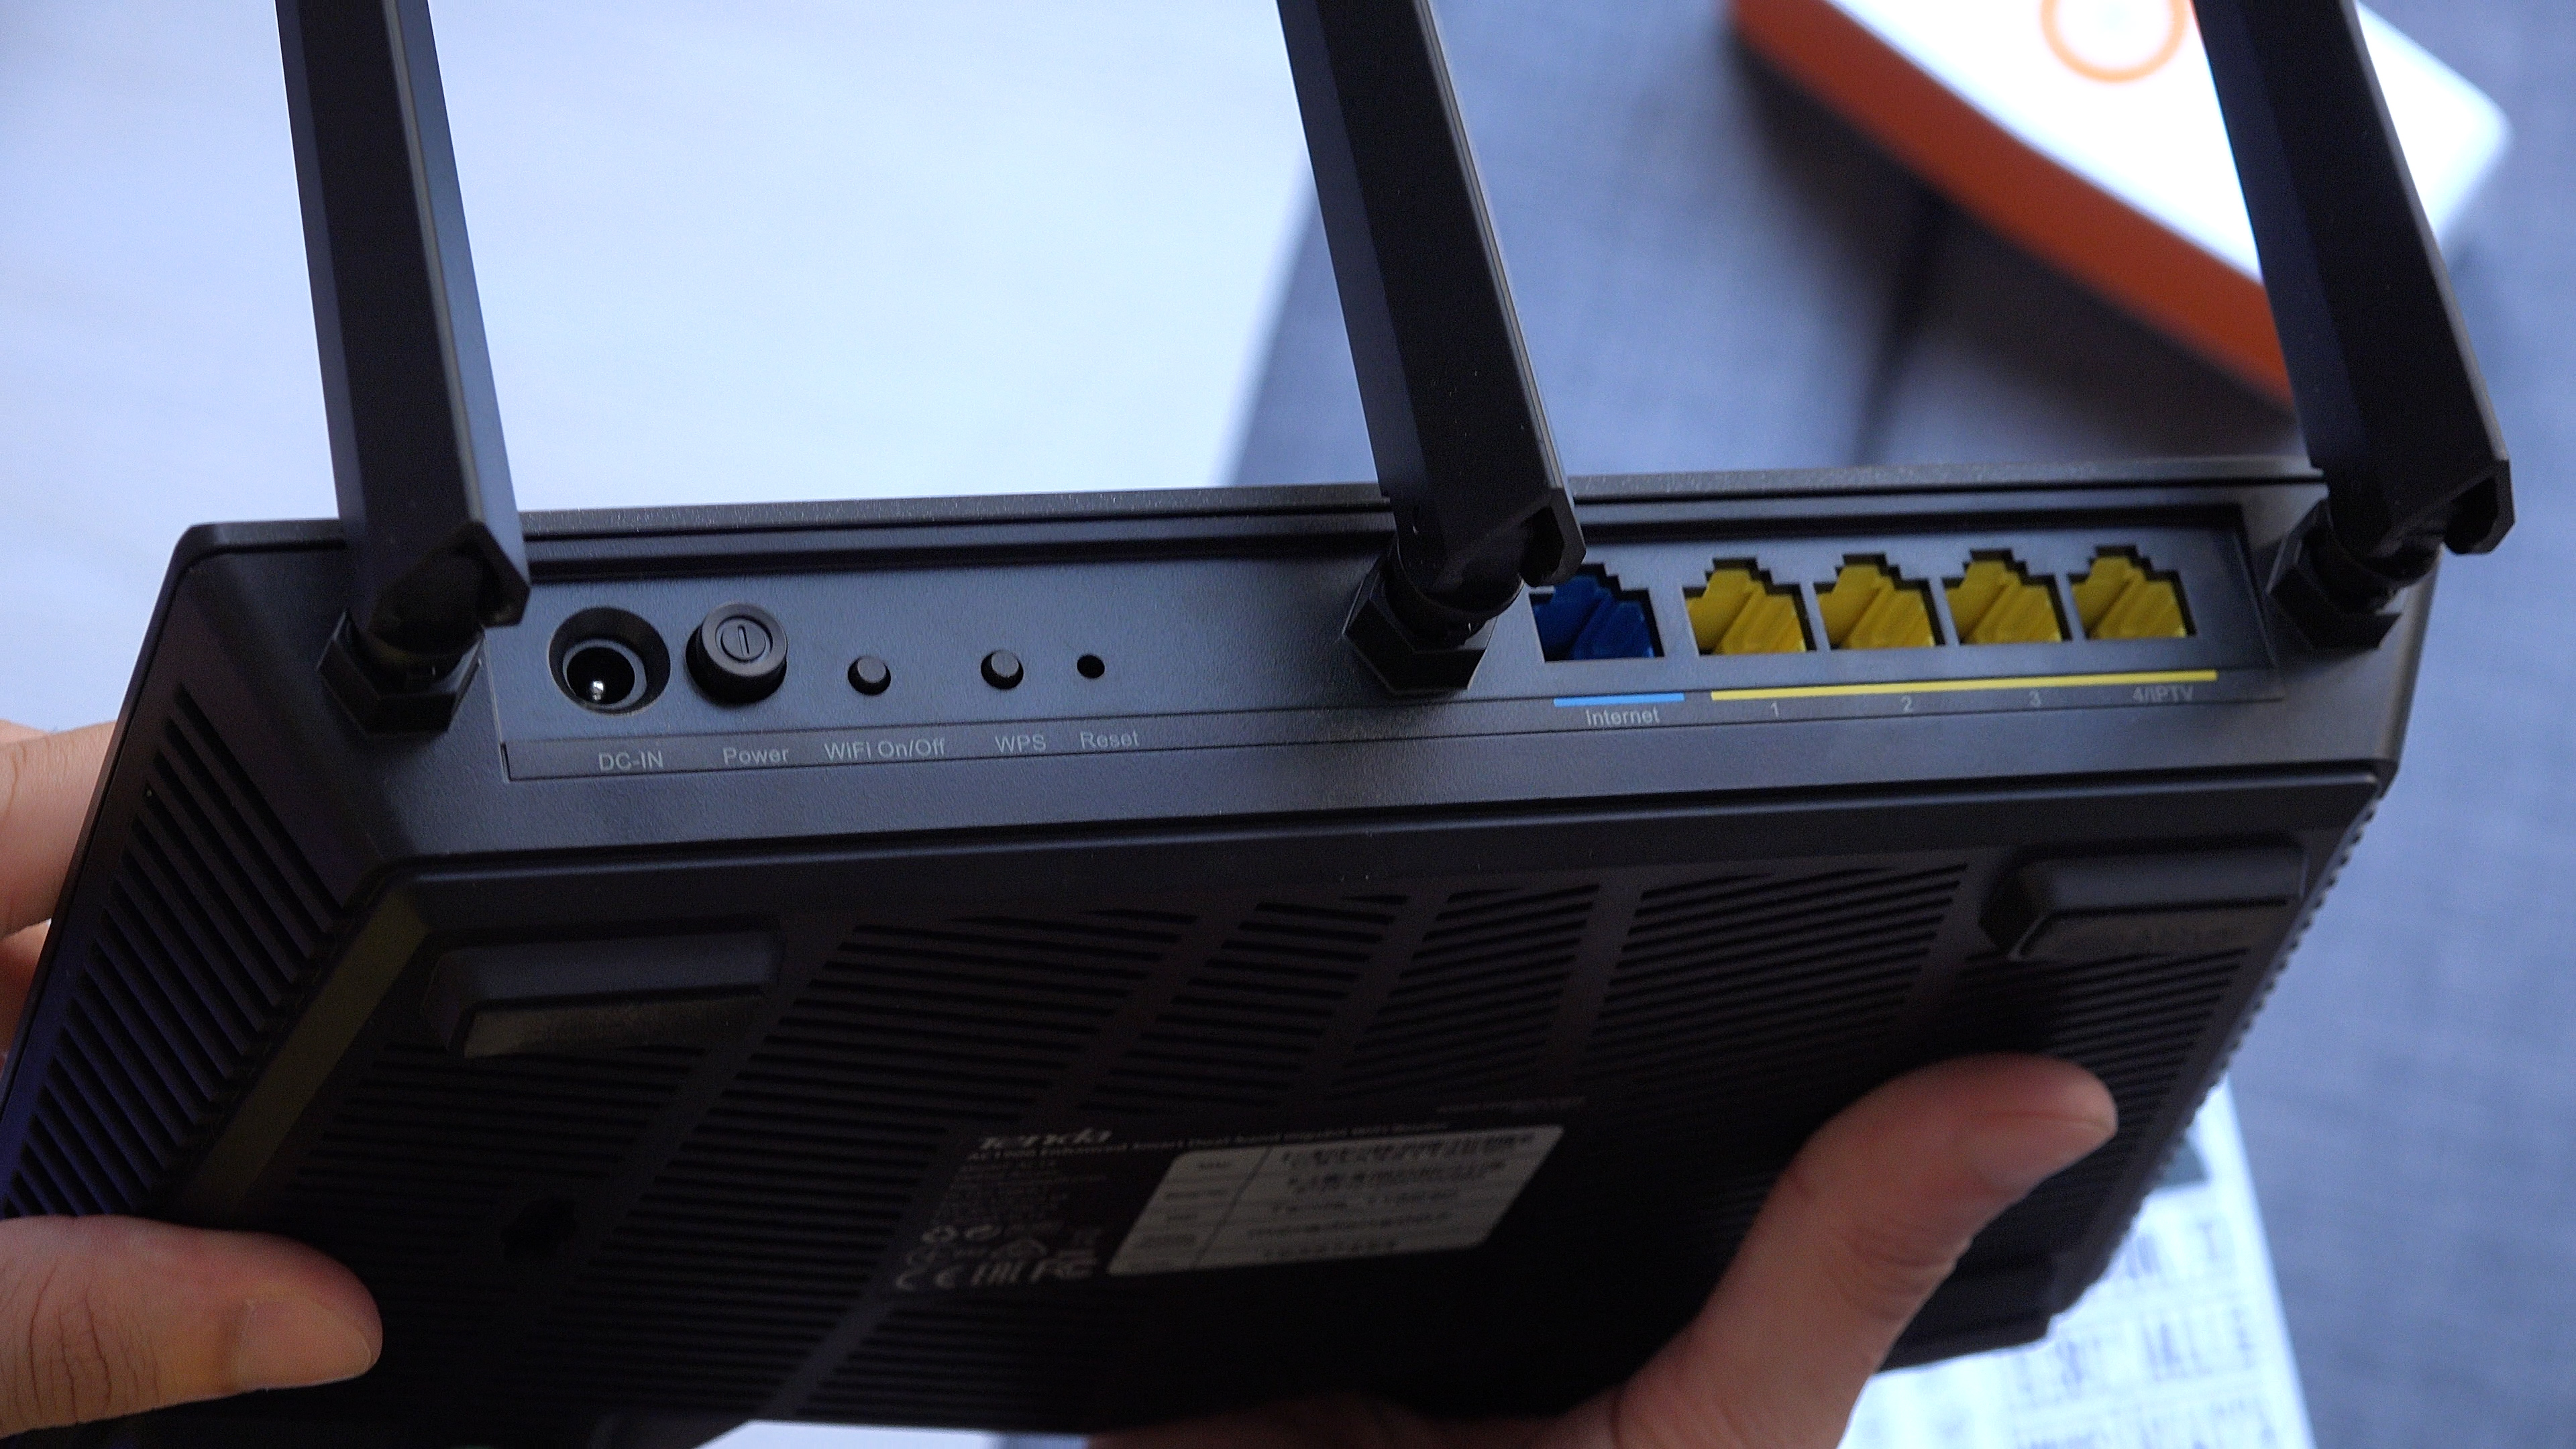 Broadcom yongalı Tenda AC18 router ve F/P ürünü U12 Wi-Fi adaptörü inceledik